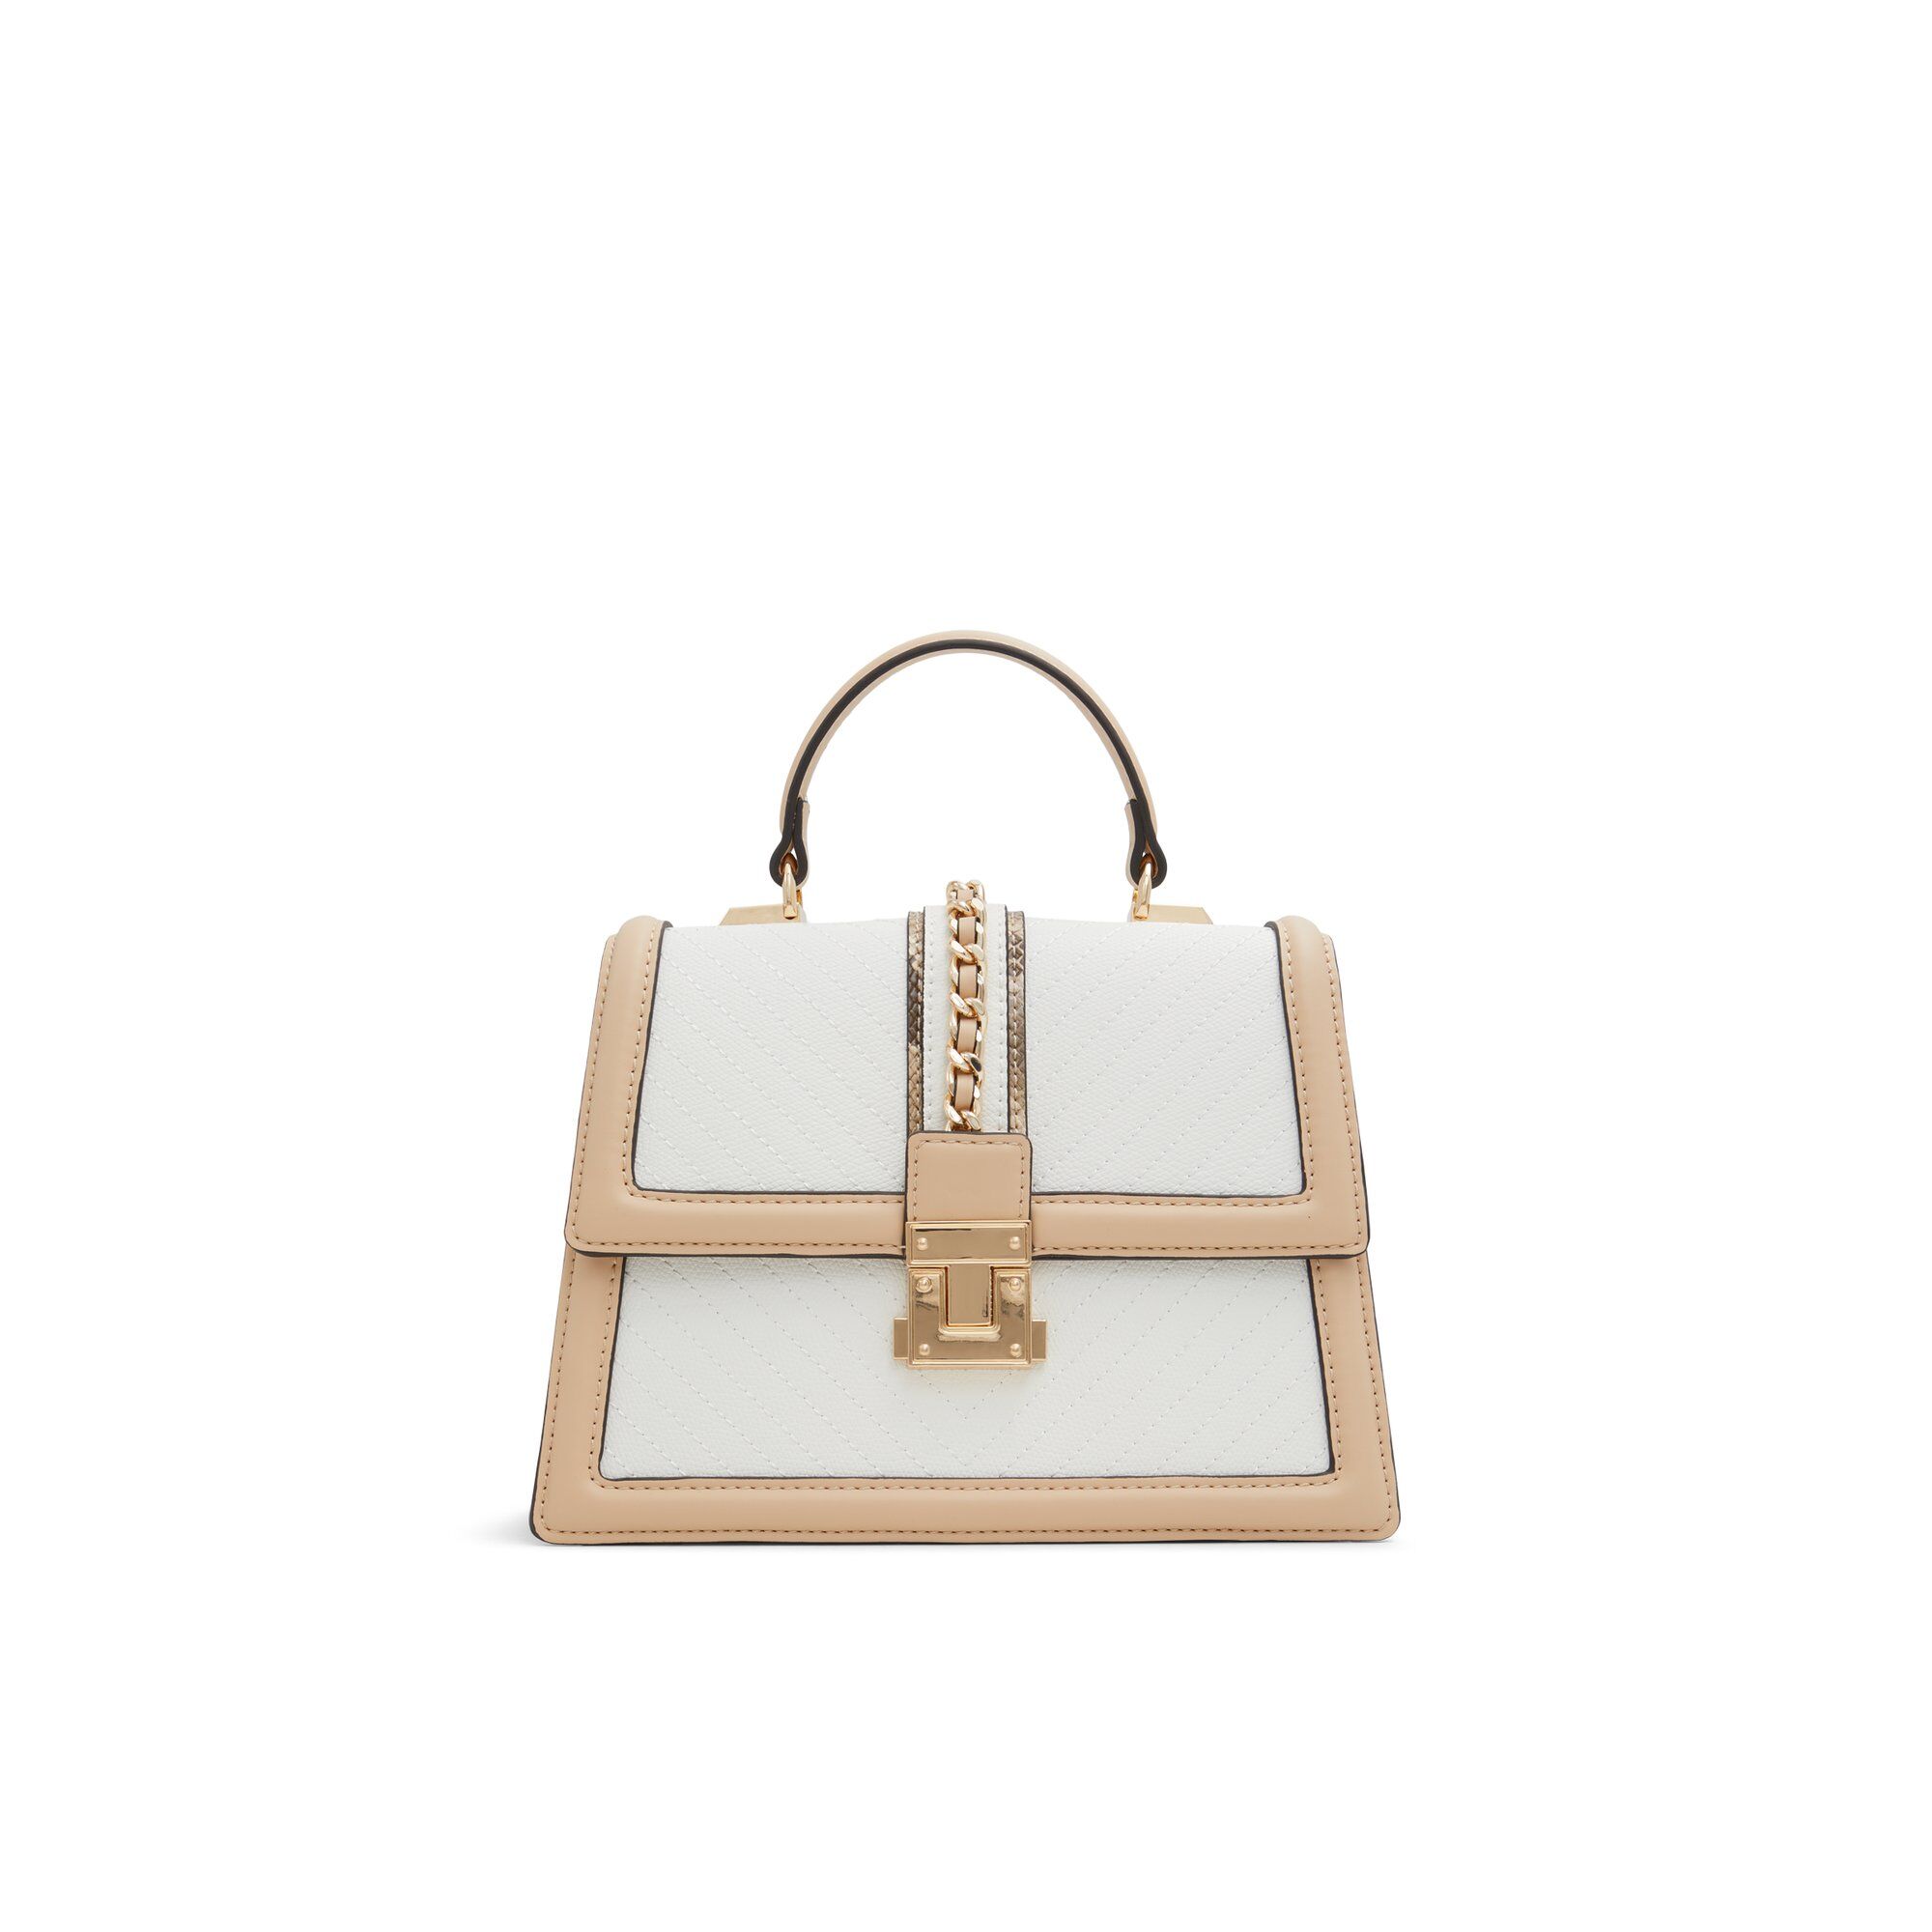 ALDO Hennahhx - Women's Top Handle Handbag - Beige